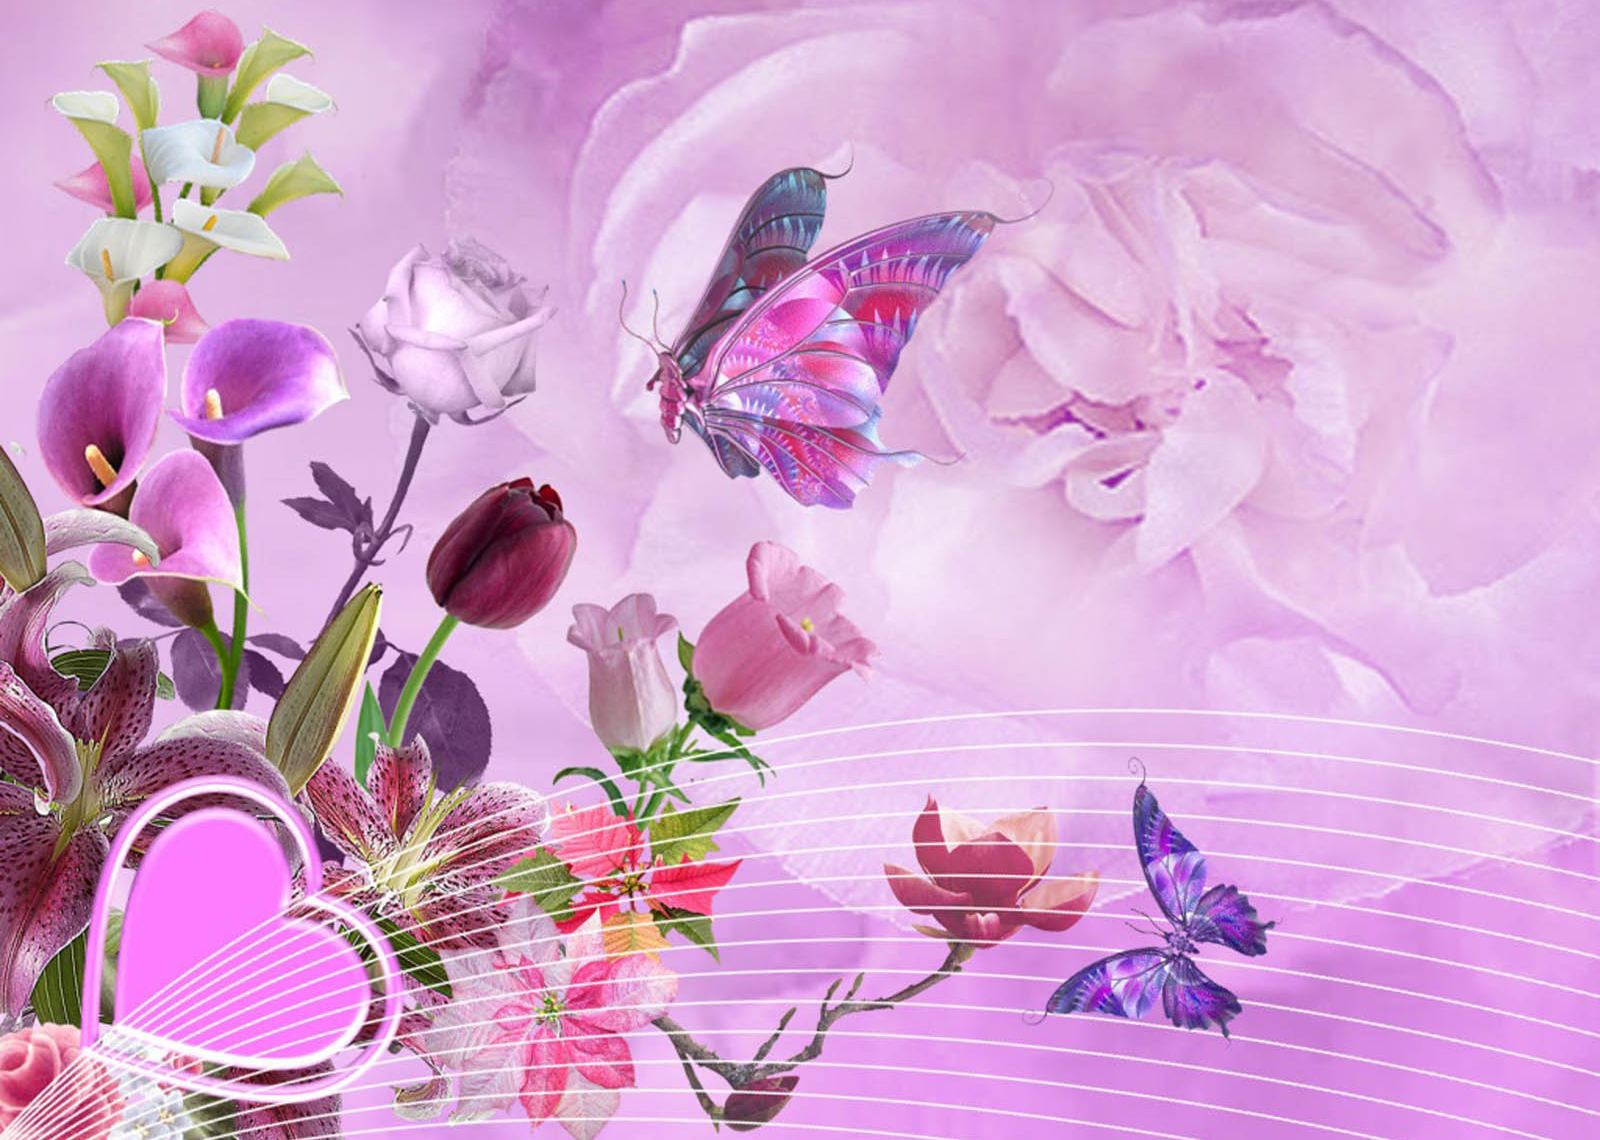 Скачать обои бесплатно Цветок, Бабочка, Сердце, Весна, Тюльпан, Художественные картинка на рабочий стол ПК